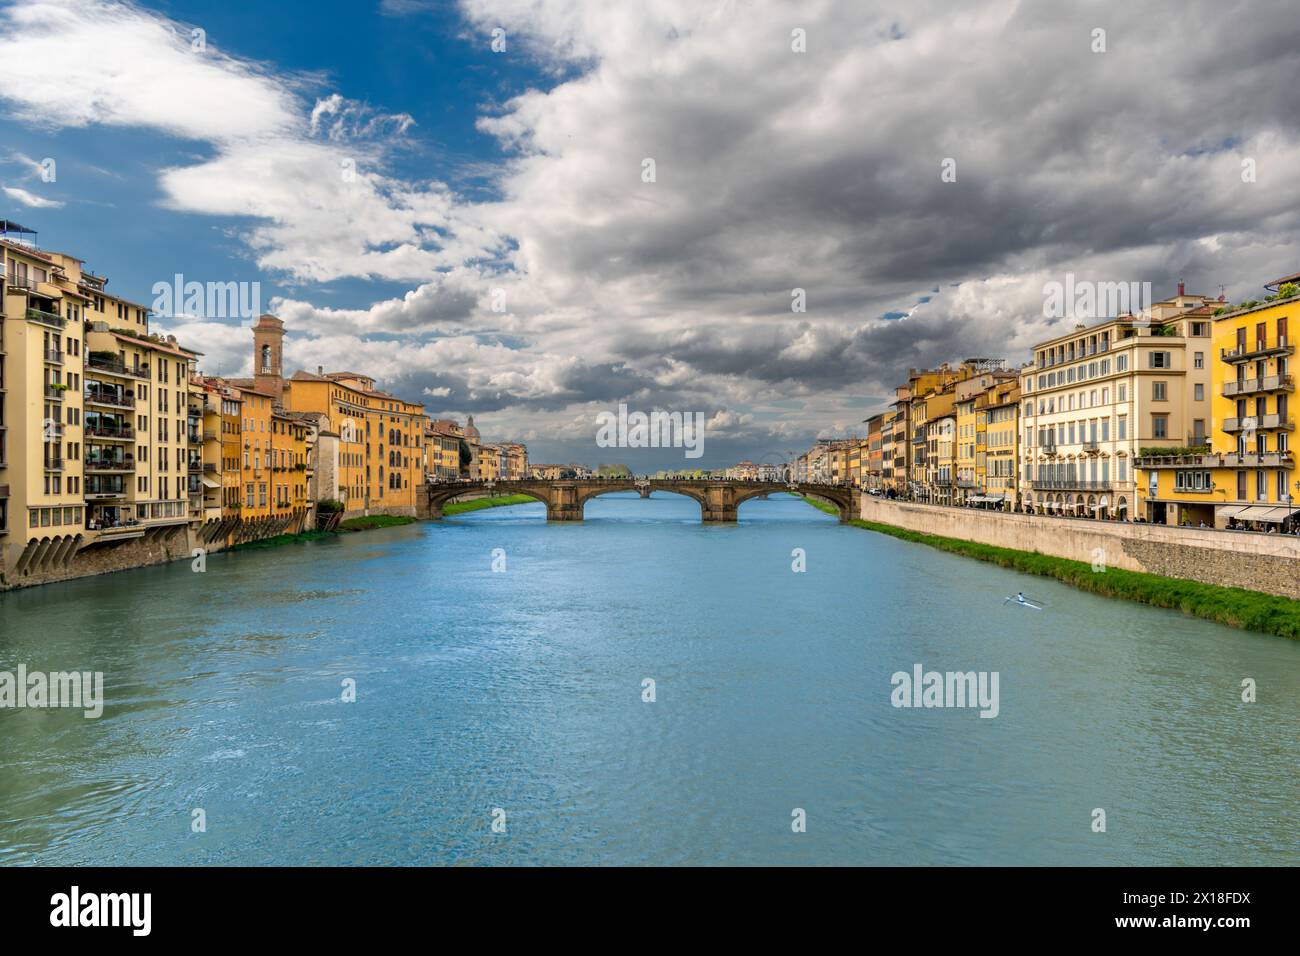 La rivière Arno coule à travers le centre historique de Florence, en Italie, parmi les anciens palais avec le pont en arc Santa Trinita Banque D'Images